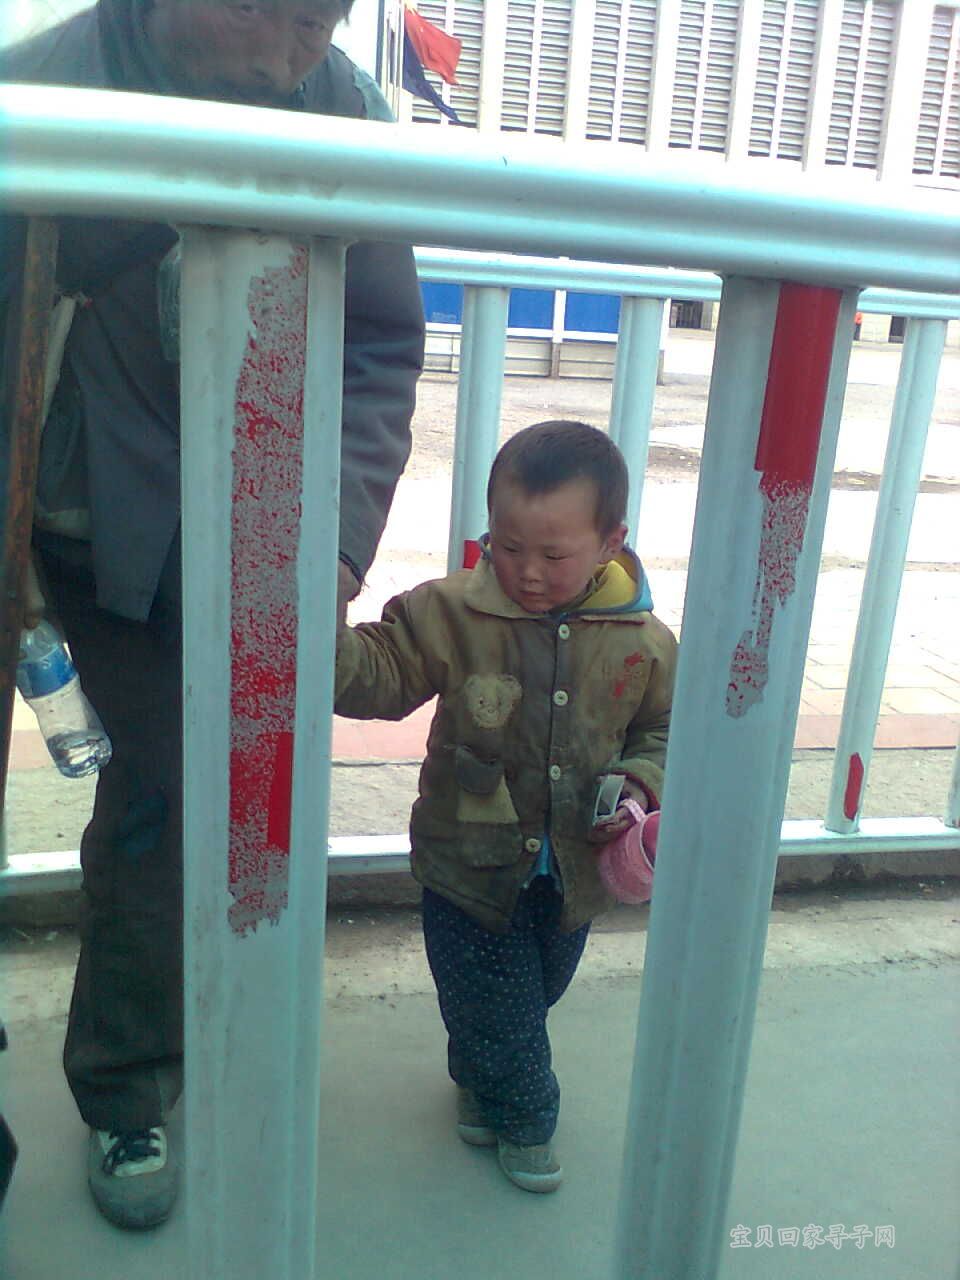 何肥火车站拍到的乞讨儿童